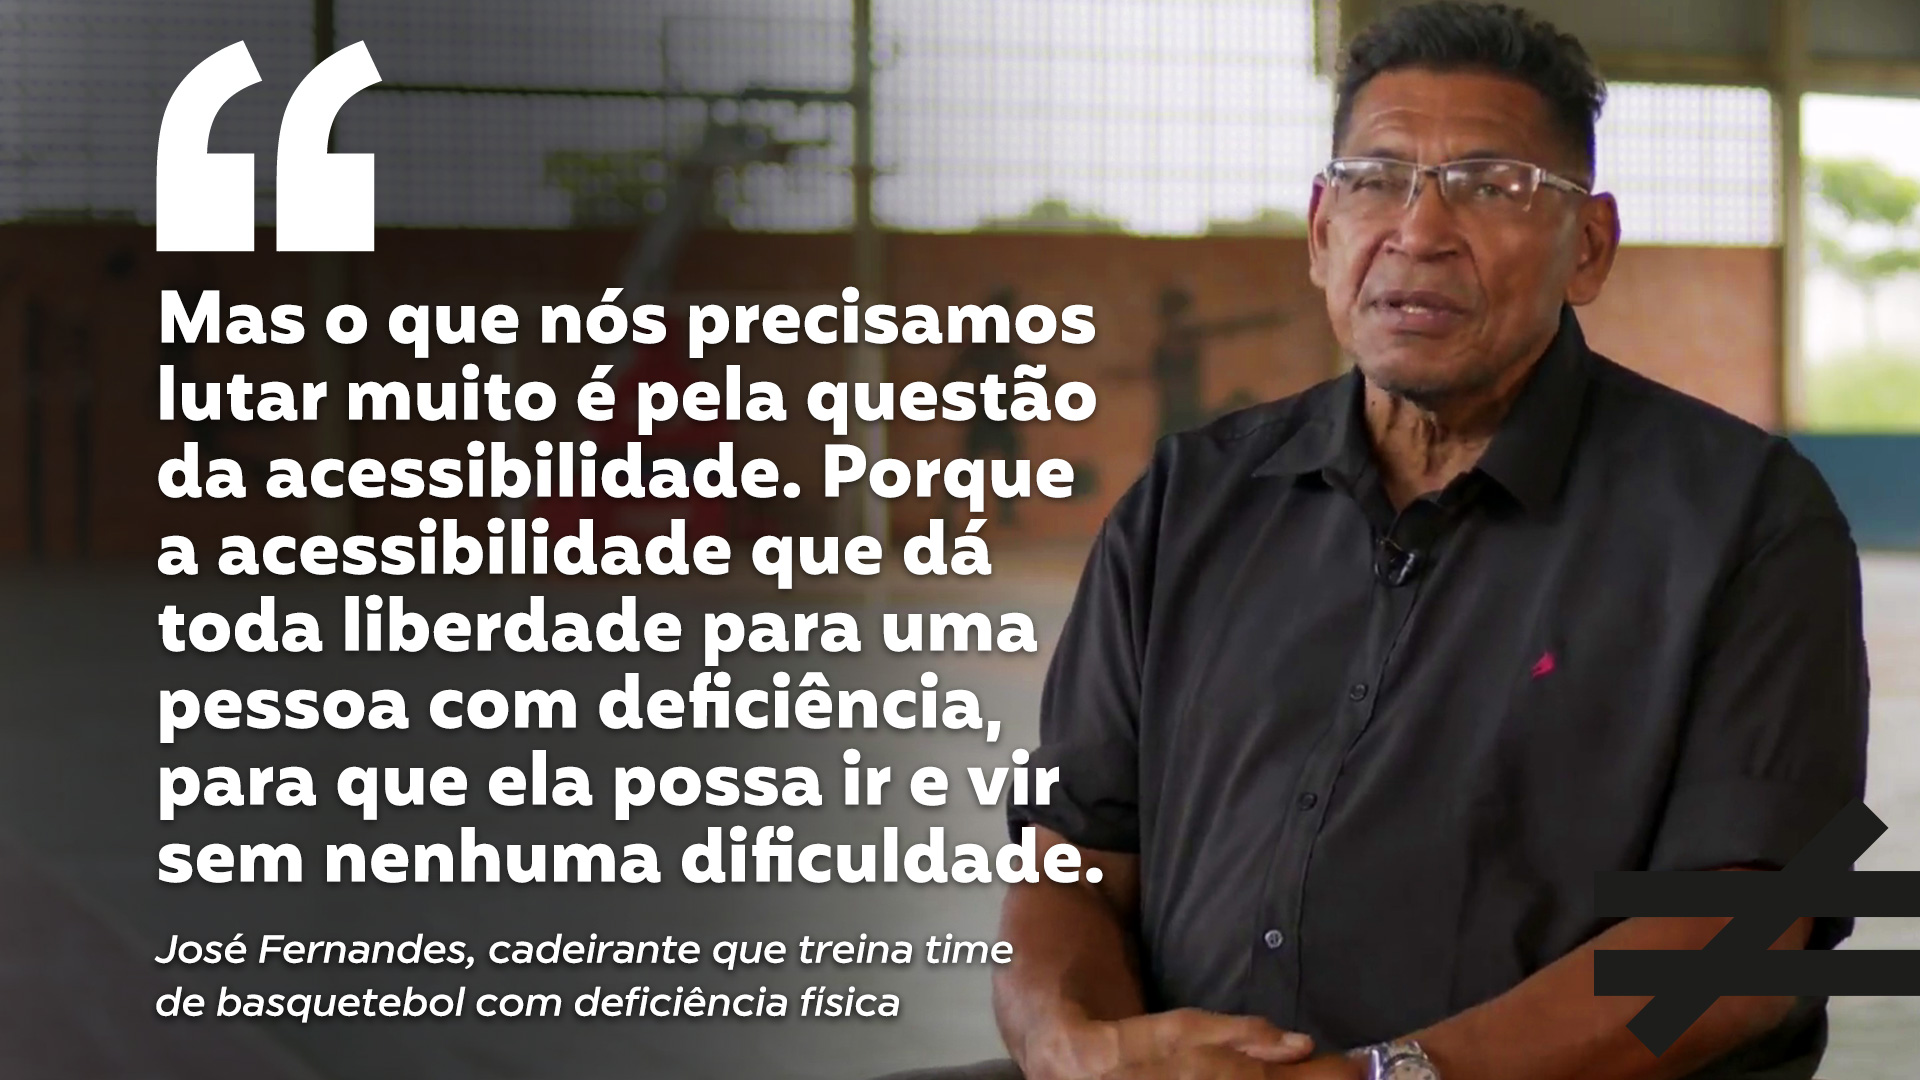 José Fernandes, cadeirante que treina time de basquetebol com deficiência física, é tema do Fazendo a Diferença